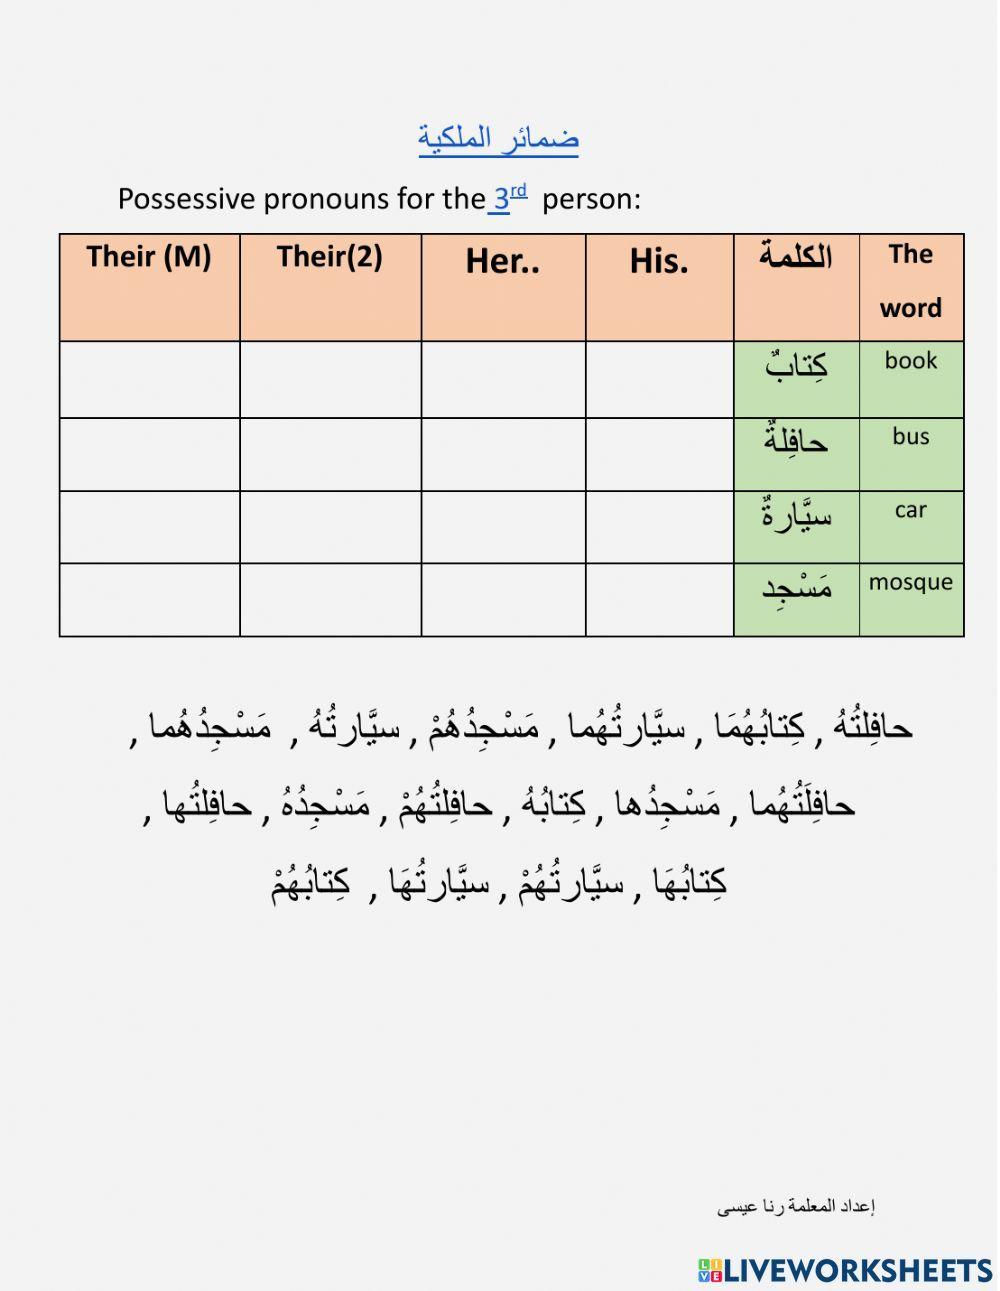 ضمائر الملكية للغائب-Attached pronouns(possessive pronouns)for the 3rd person